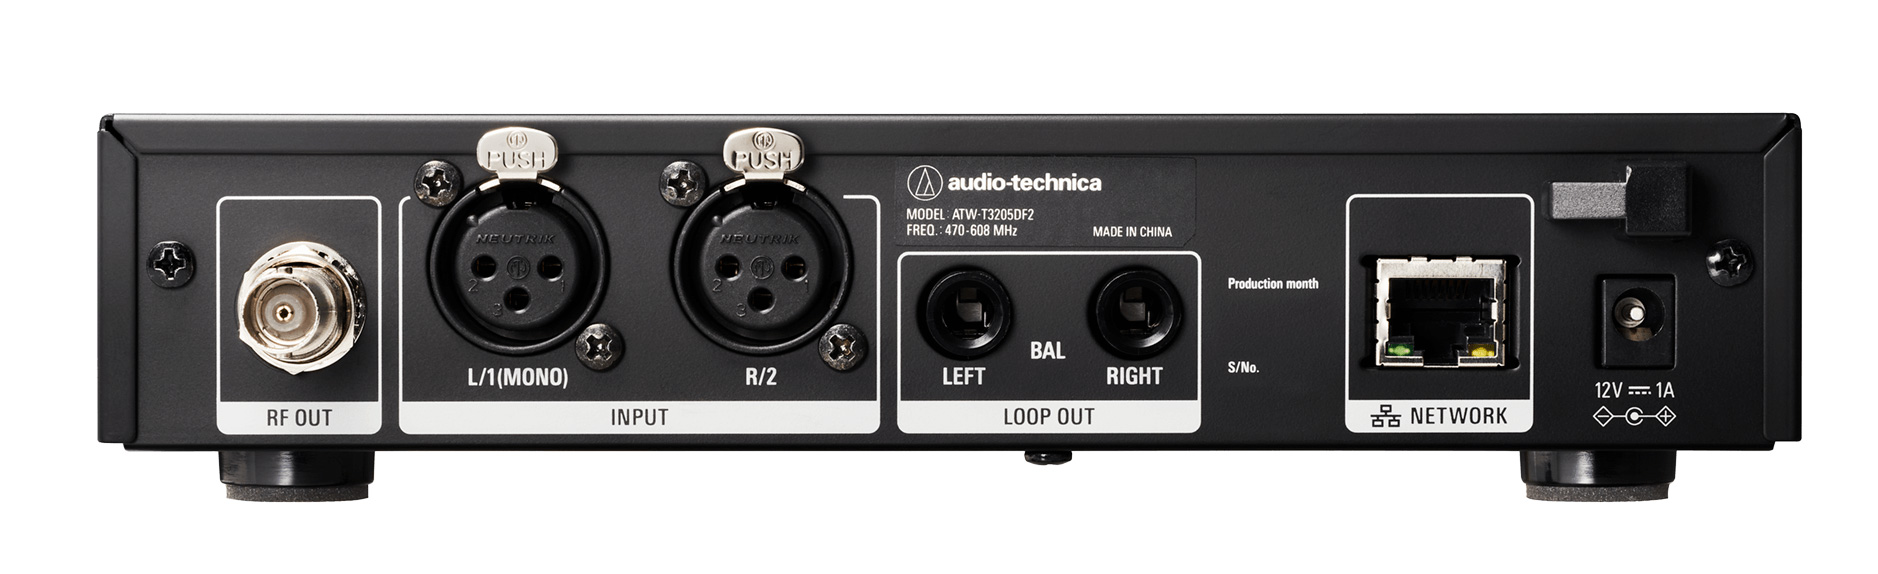 Audio Technica ATW 3255 IEM 3000 series nadajnik rear